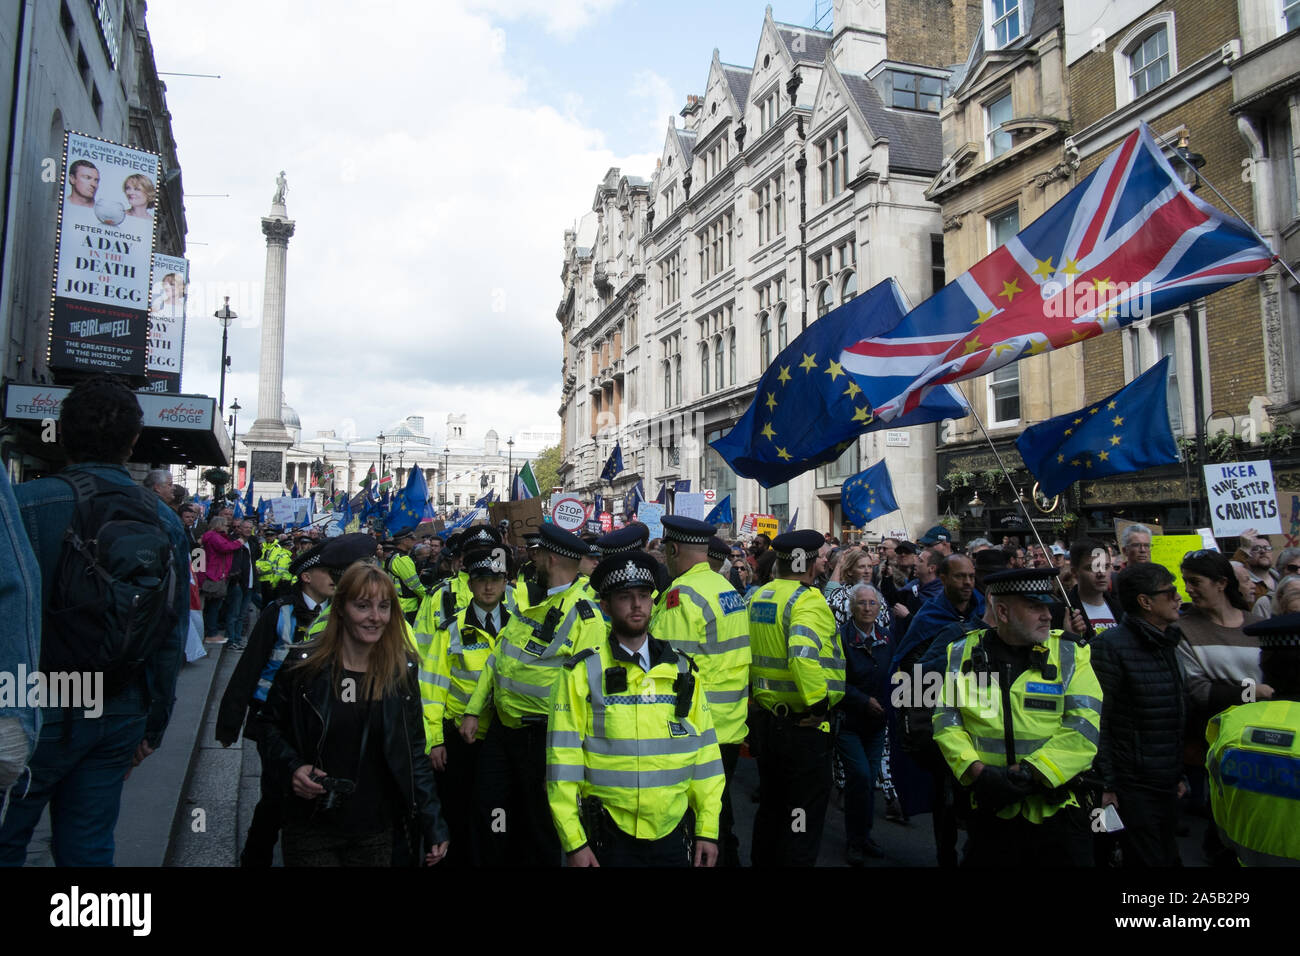 Londres, Angleterre, Royaume-Uni. 19 octobre 2019. Les manifestants marchons à travers le centre de Londres aujourd'hui à exiger que le public a donné un dernier mot sur Brexit. La marche a été organisée par le vote du peuple 'Campagne', qui sont pour une dernière campagne référendum sur un Brexit s'occuper d'être soumis à un vote public. La foule s'entendre les discours des politiciens et des célébrités à l'extérieur du Parlement. Il y a eu une petite manifestation contre la marche par des gens qui ont voté pour partir. Ils demandent l'anti brexit manifestants Nazis. Les deux manifestations séparées de la police. Andrew Steven Graham/Alamy Live News Banque D'Images